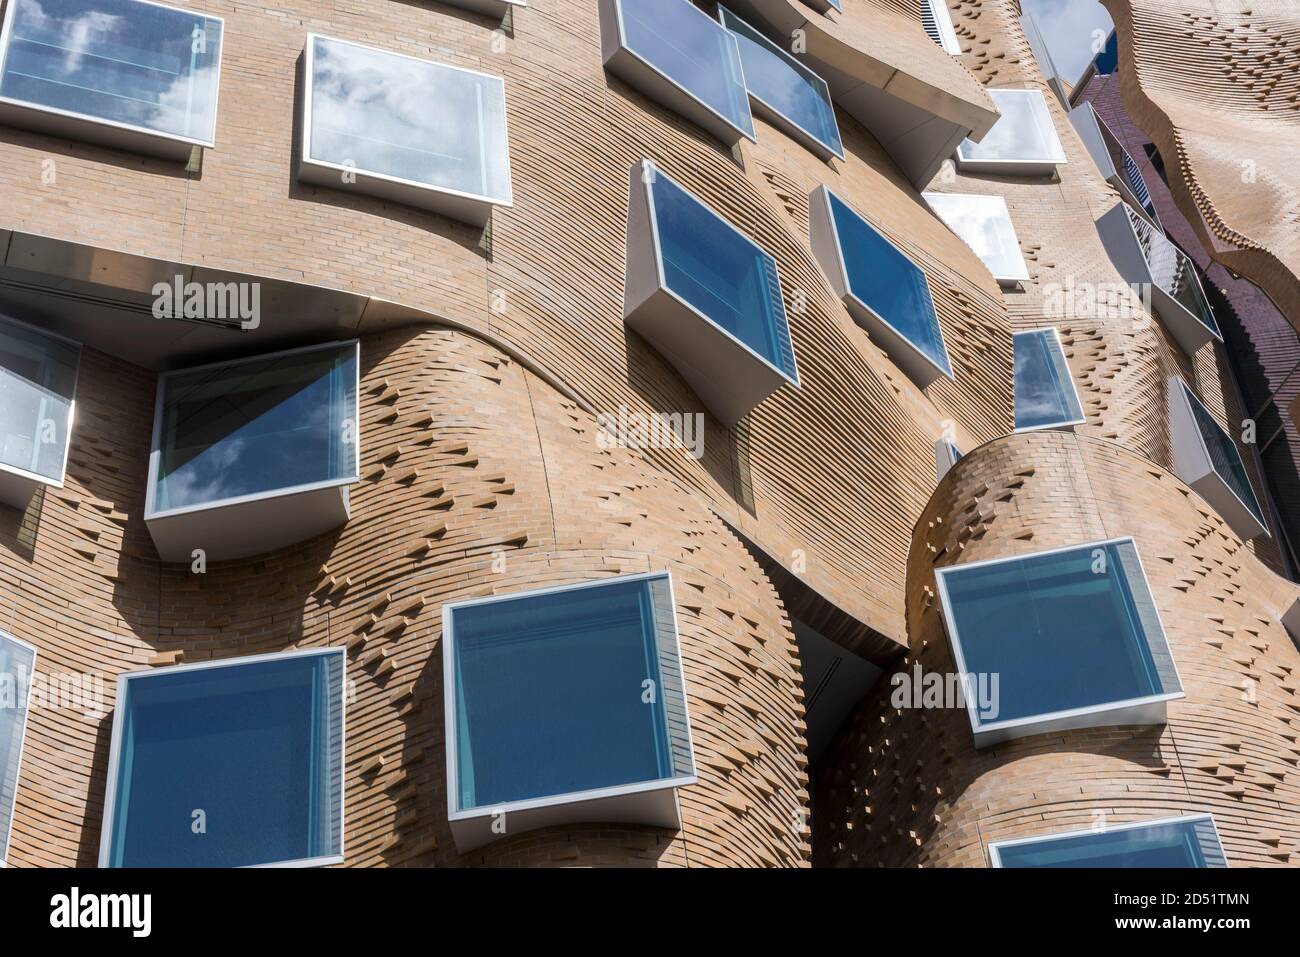 Detailansicht der gewellten Ziegelwand. DR Chau Chak Wing Building, UTS Business School, Sydney, Australien. Architekt: Gehry Partners, LLP, 2015. Stockfoto